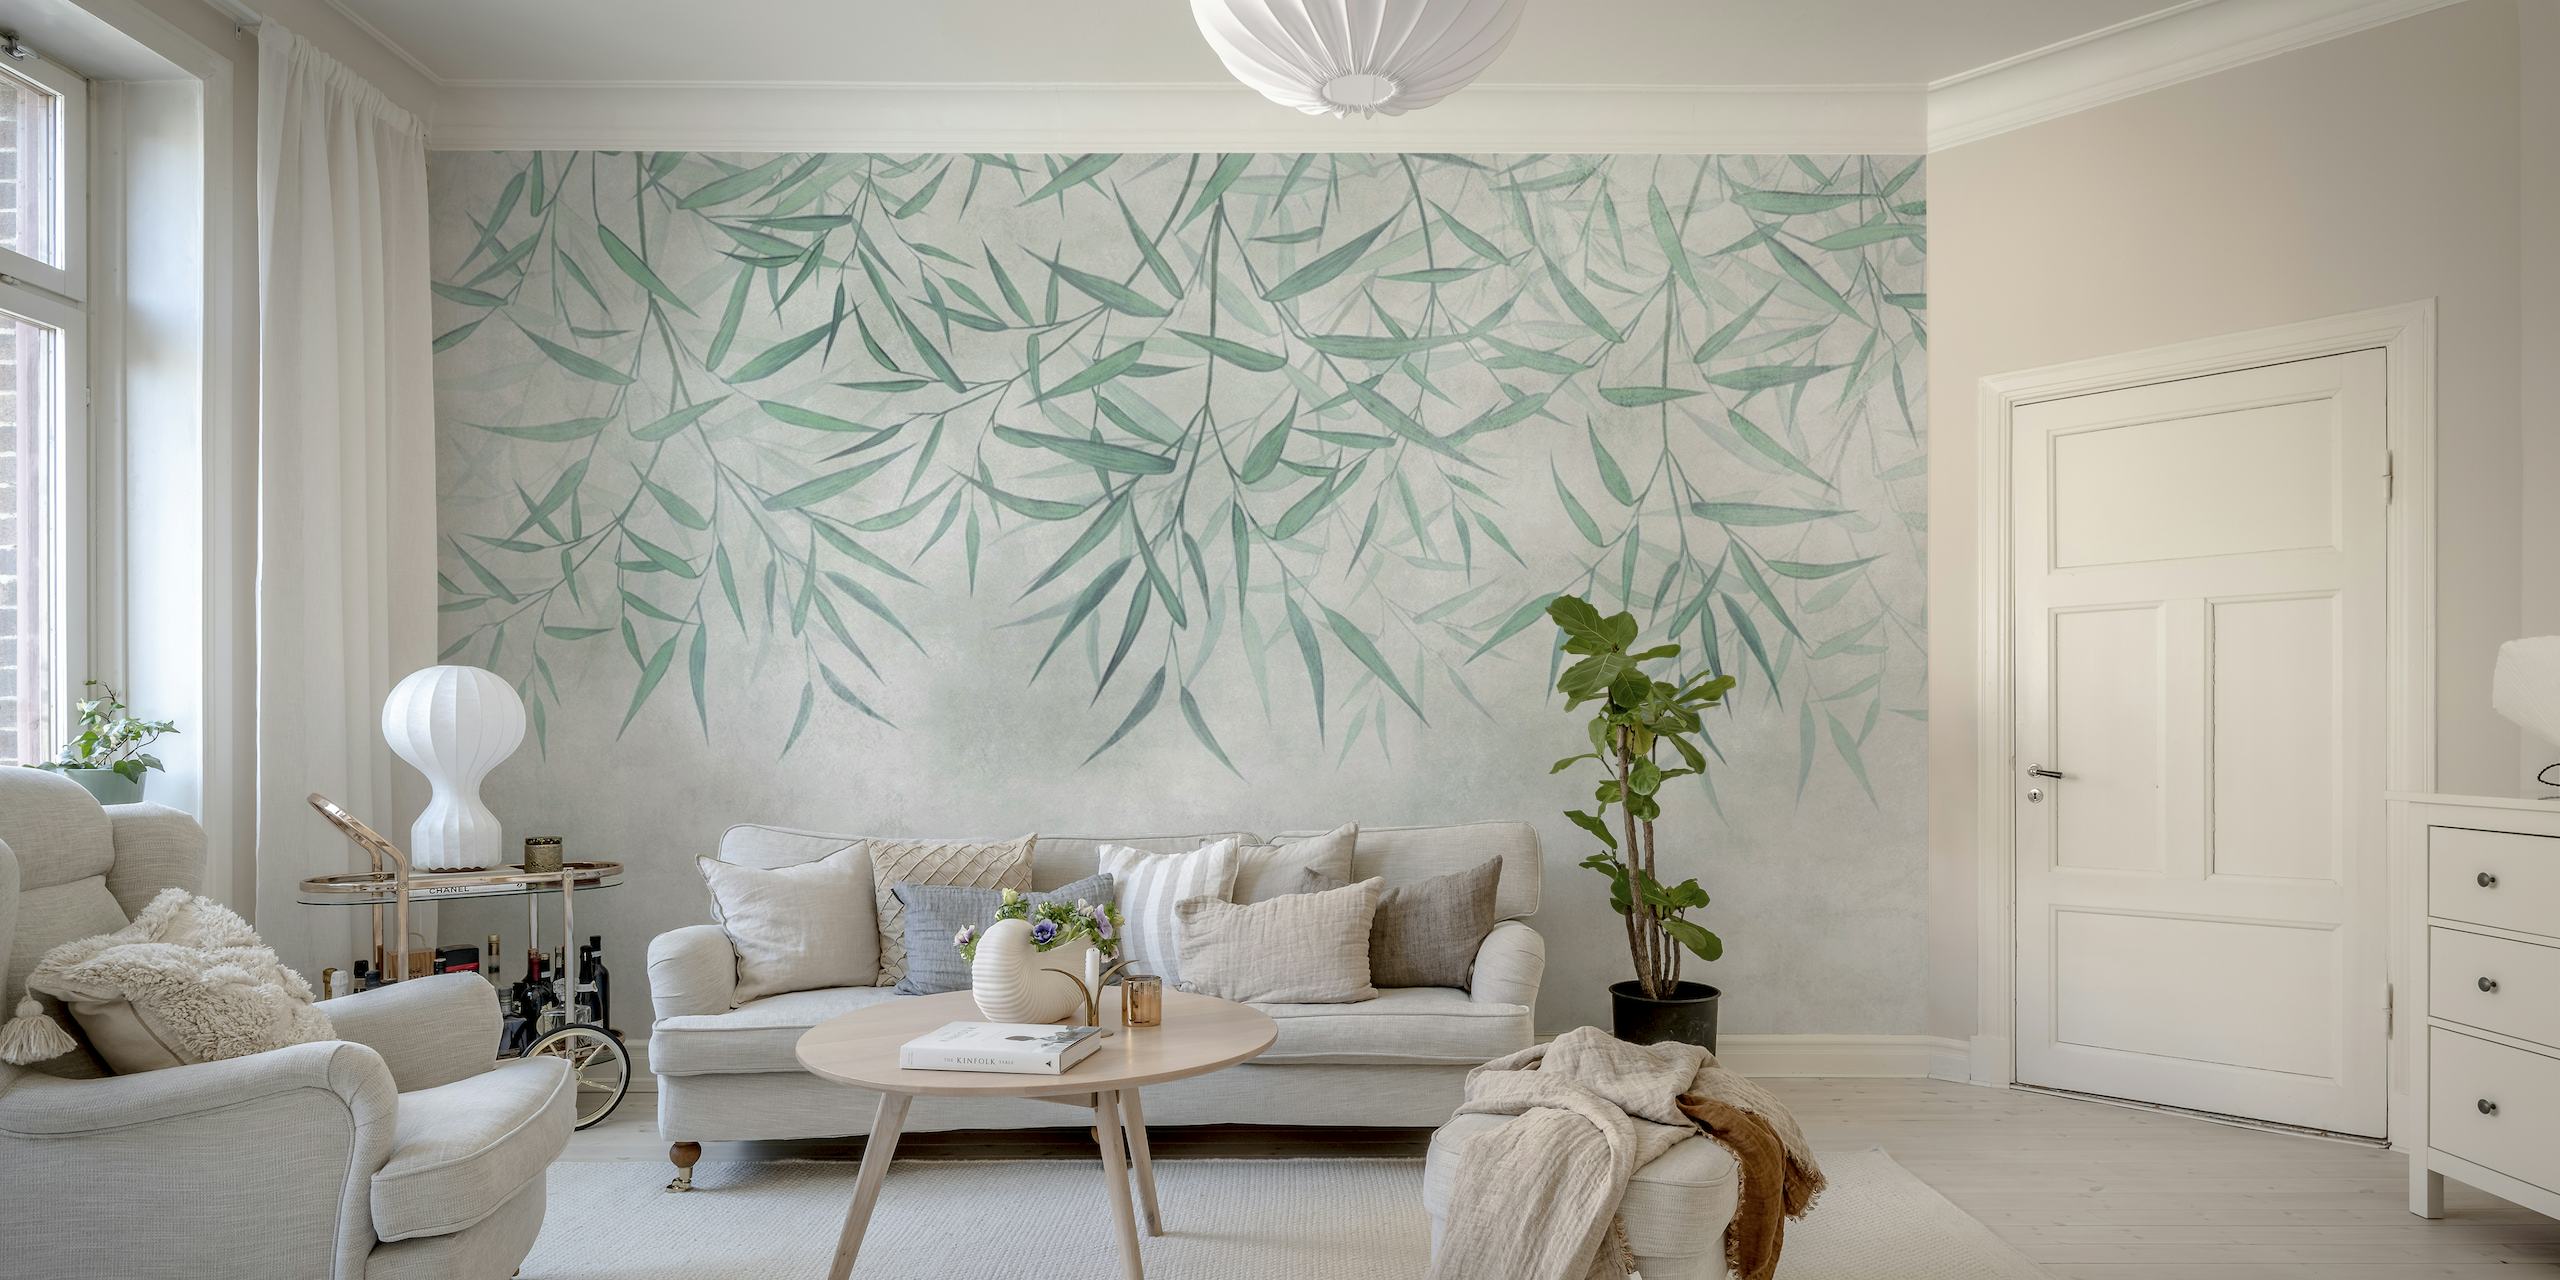 Seinämaalaus ripustetuista bambulehdistä pehmeällä taustakuvioidulla, luoden rauhallisen ja luonnollisen tunnelman